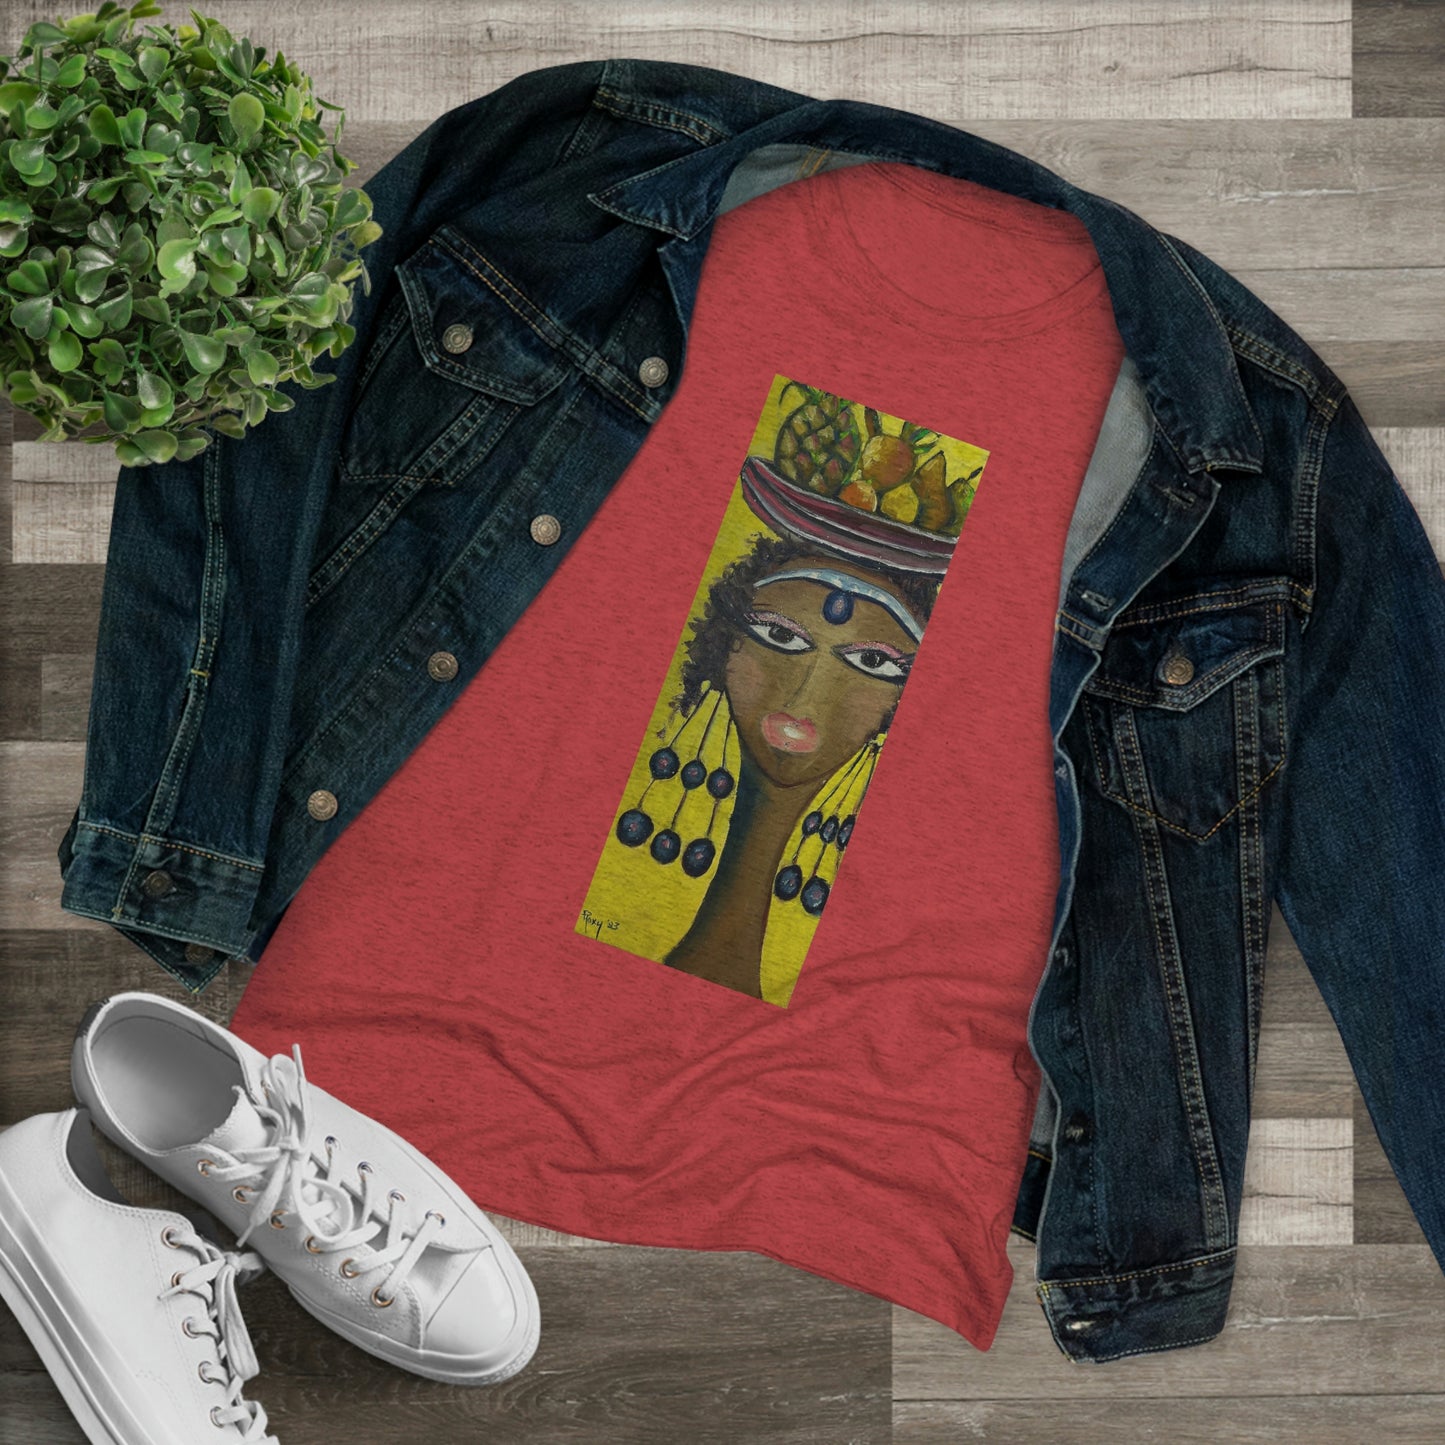 Princesa Amahle (imagen en el frente) Camiseta Triblend ajustada para mujer